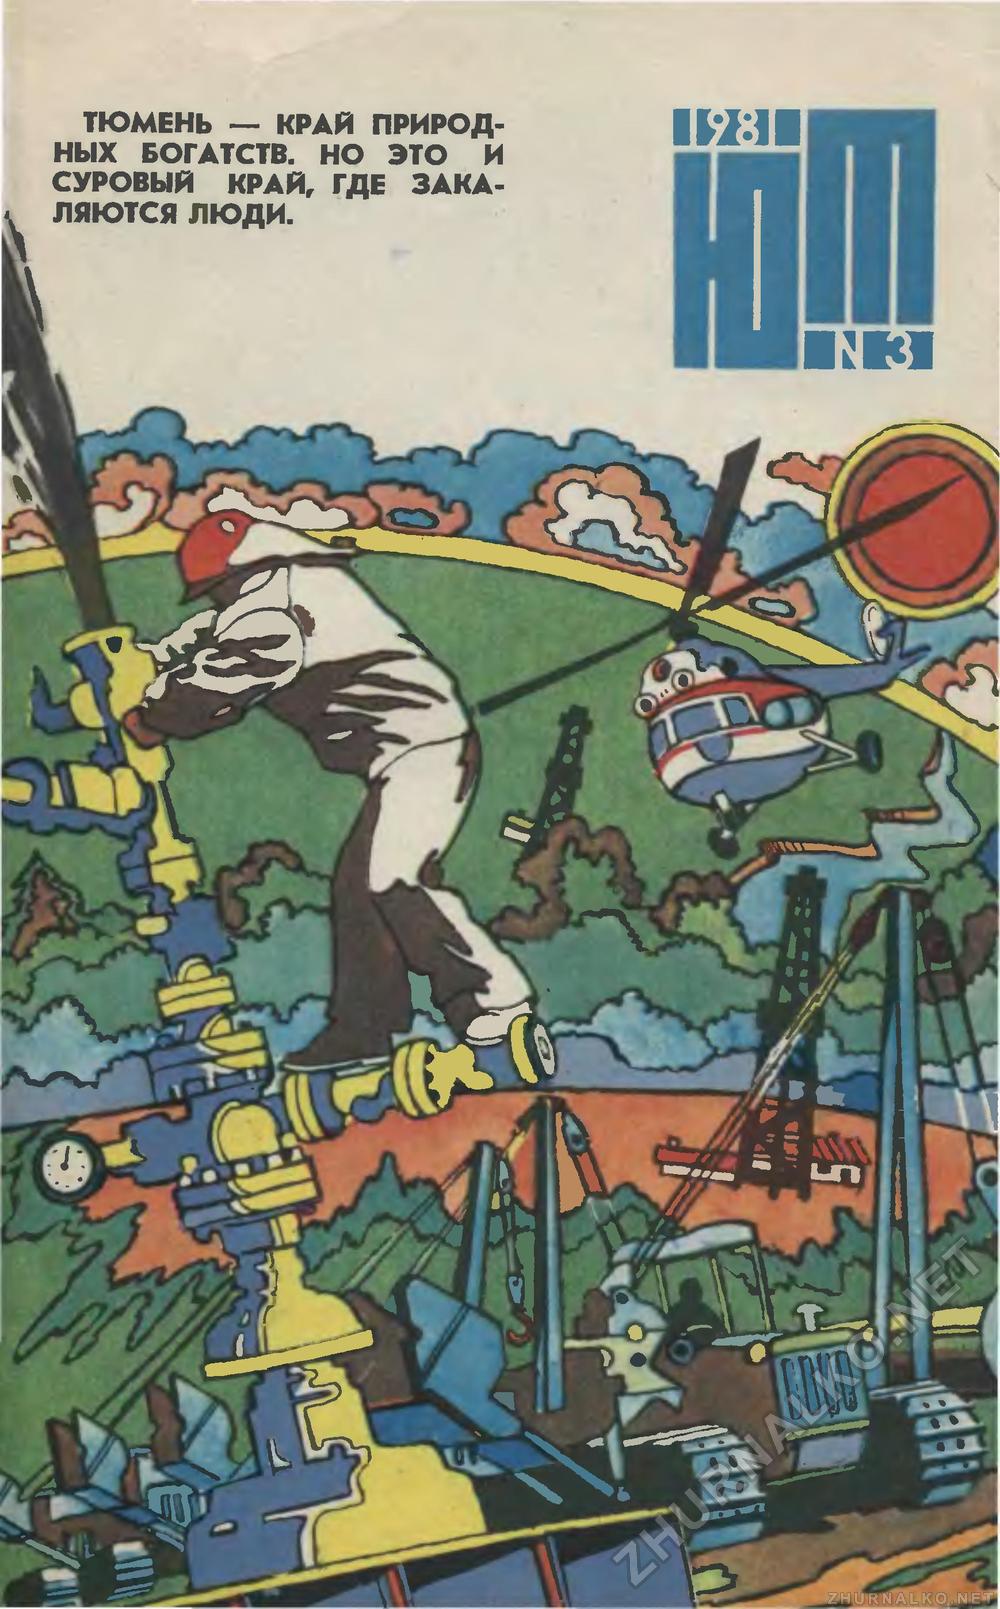   1981-03,  1